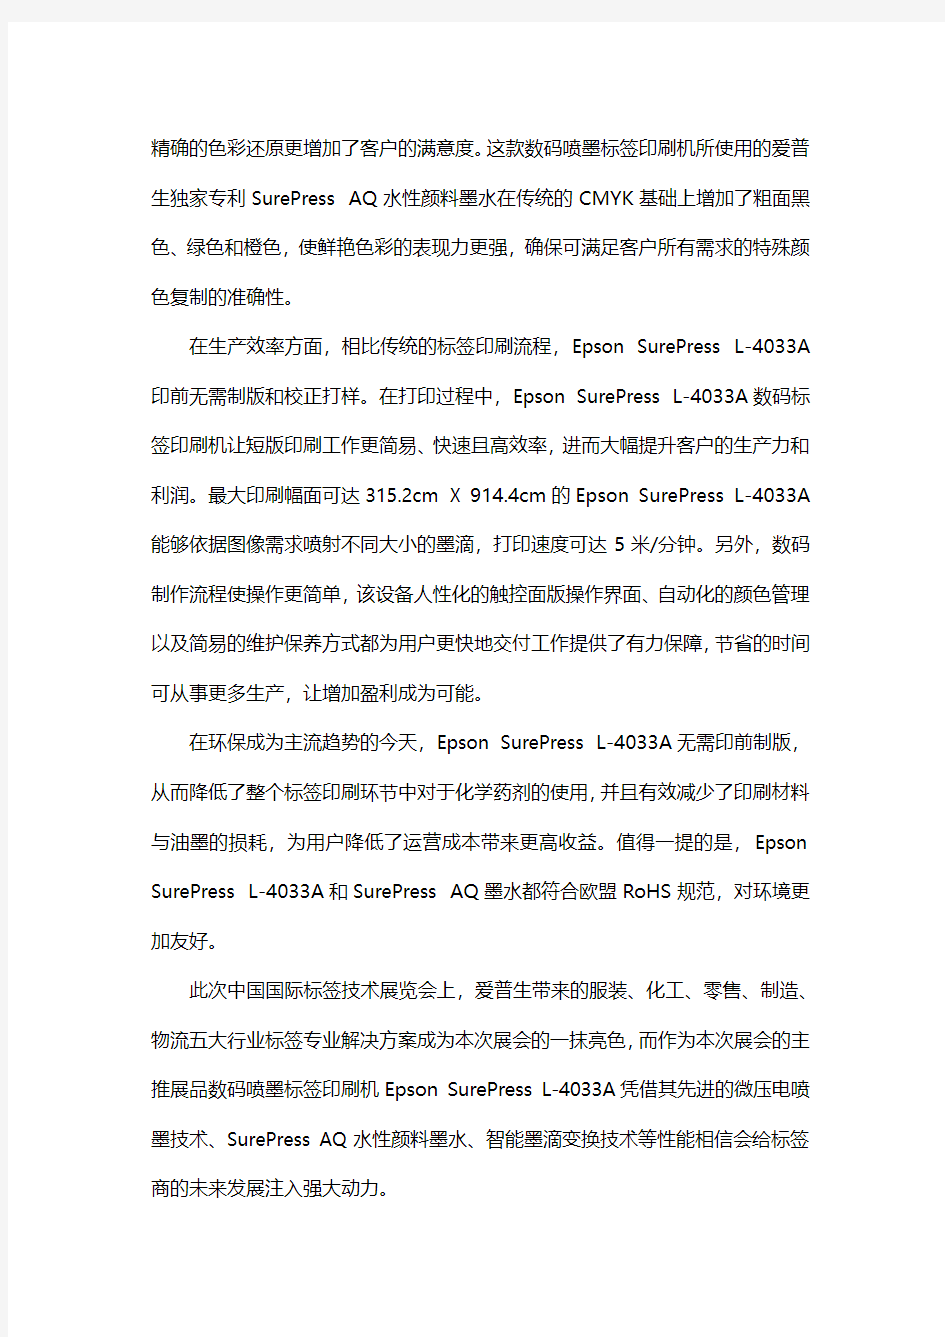 爱普生标签印刷解决方案点亮中国国际标签技术展_1031_1.0